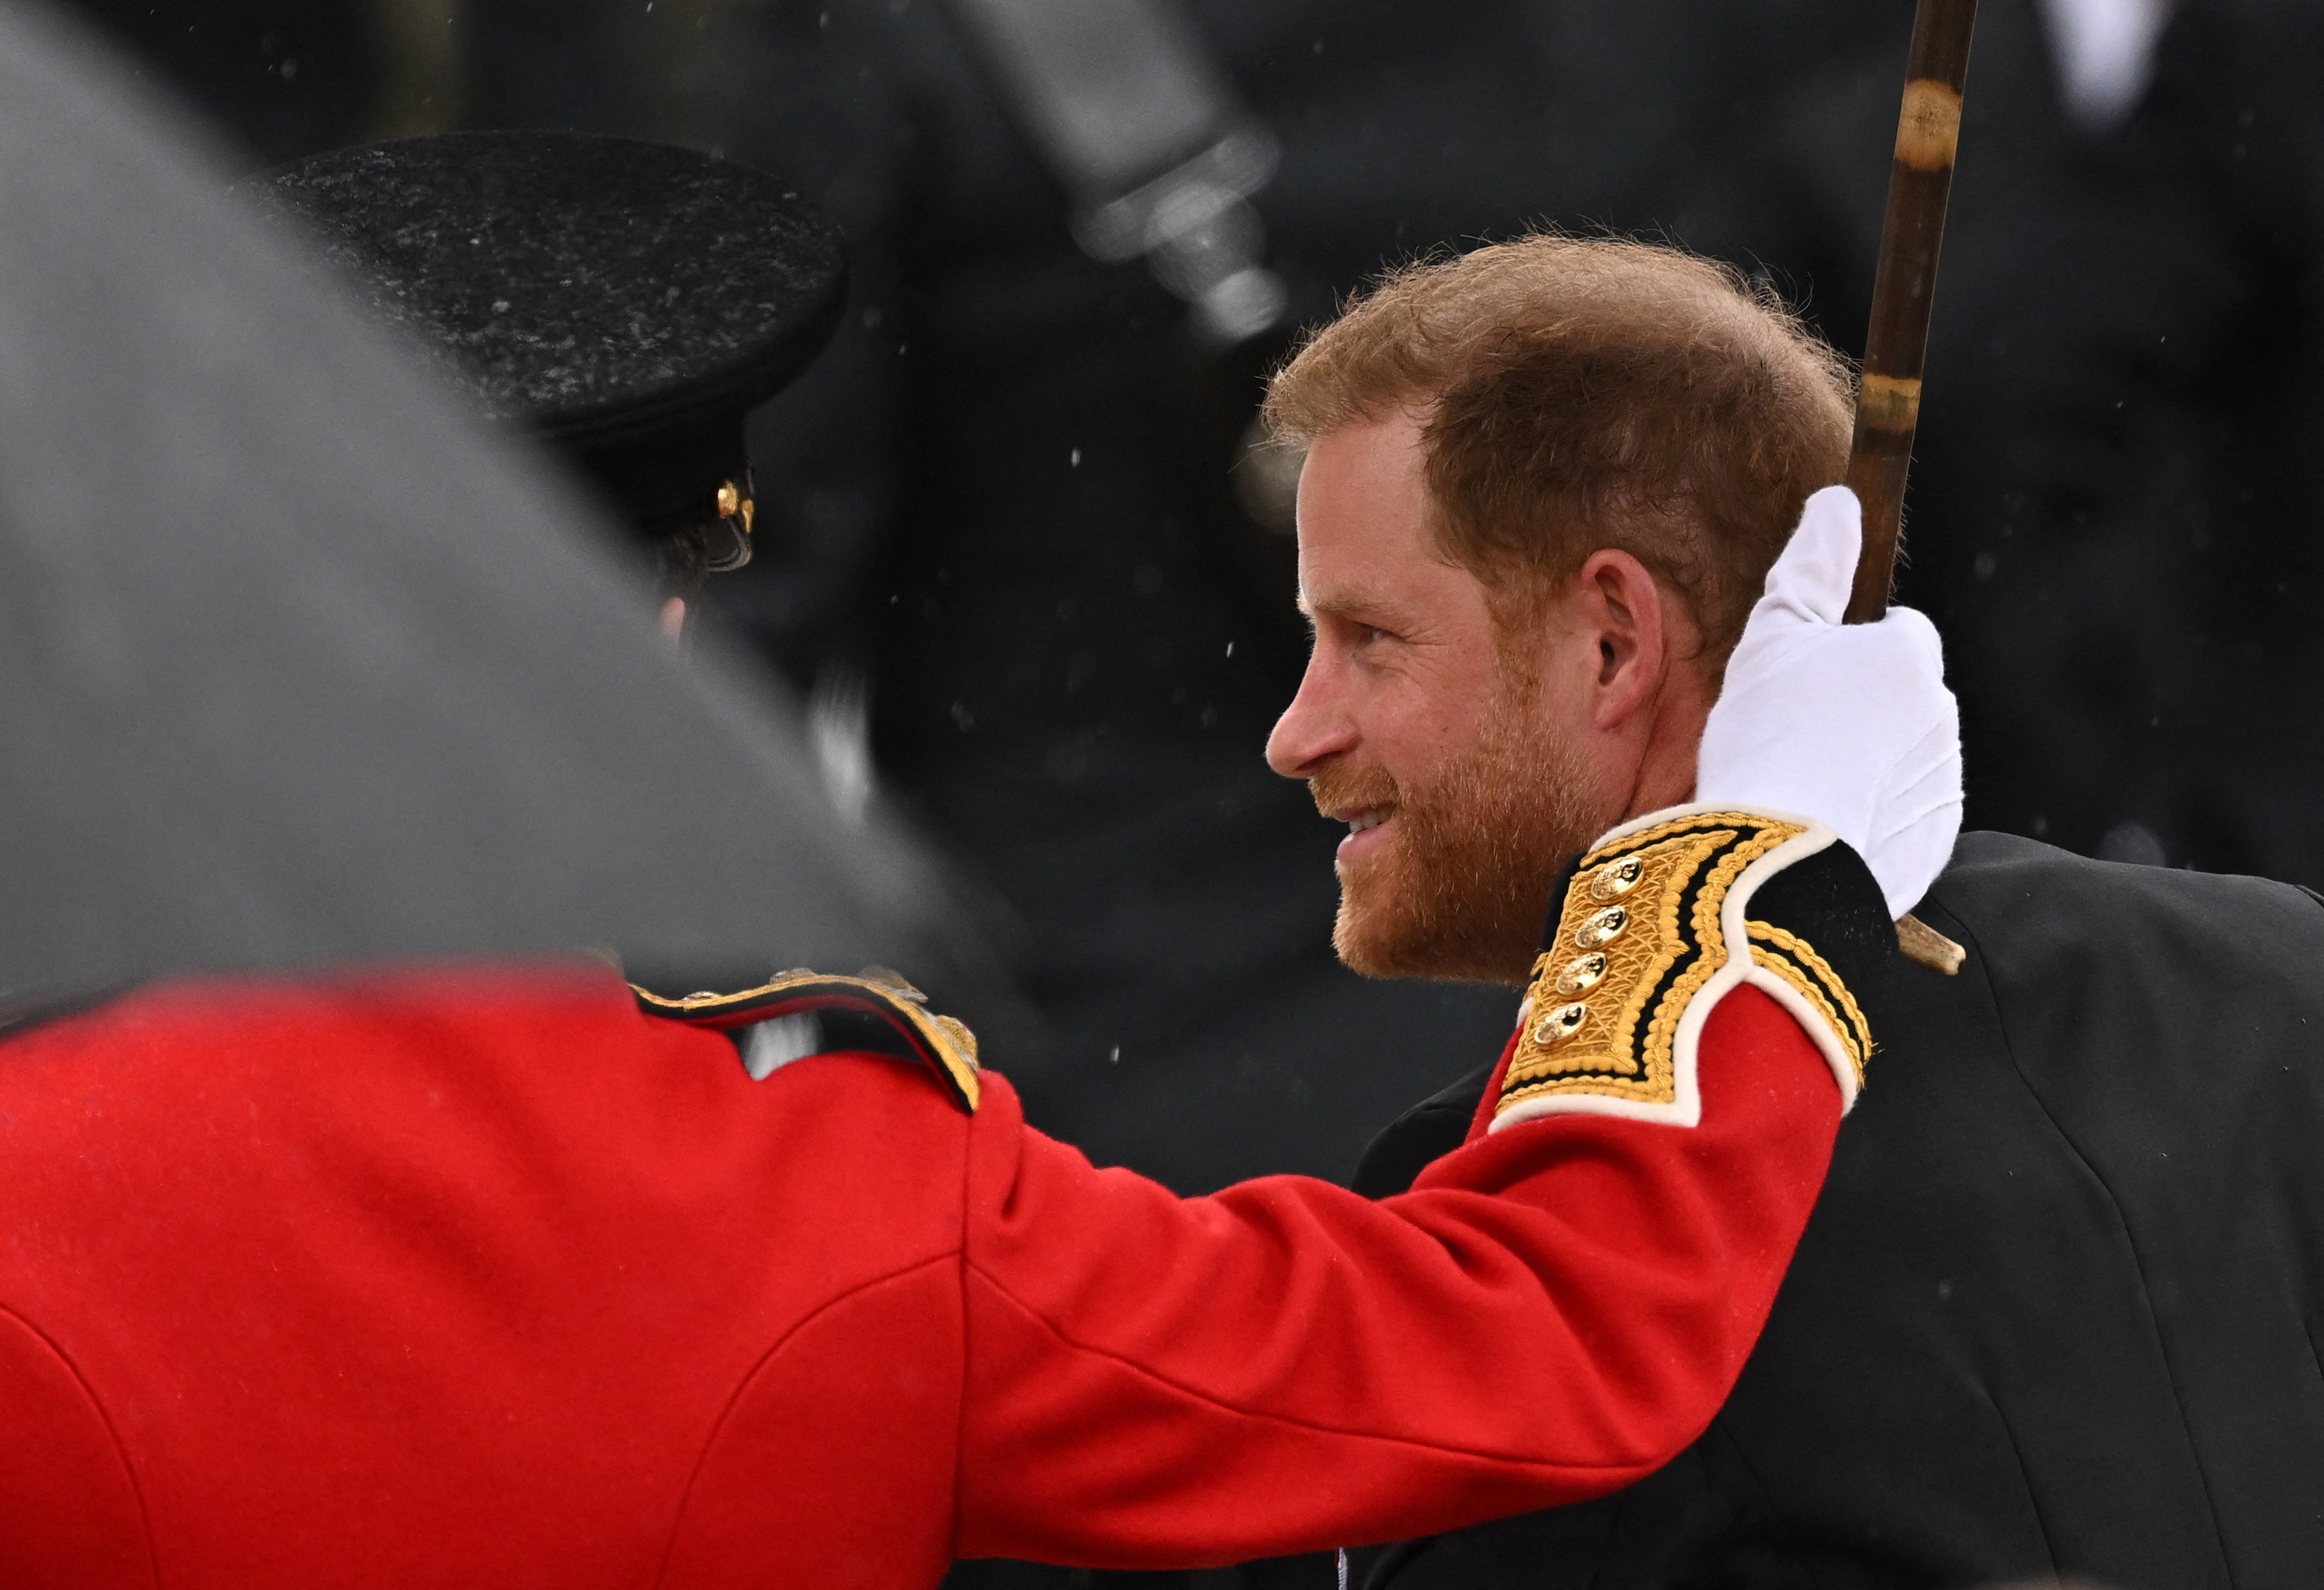 El príncipe Harry de Gran Bretaña, duque de Sussex, camina fuera de la Abadía de Westminster antes de la ceremonia de coronación del rey Carlos de Gran Bretaña, en Londres, Gran Bretaña 6 de mayo 2023. REUTERS/Dylan Martinez